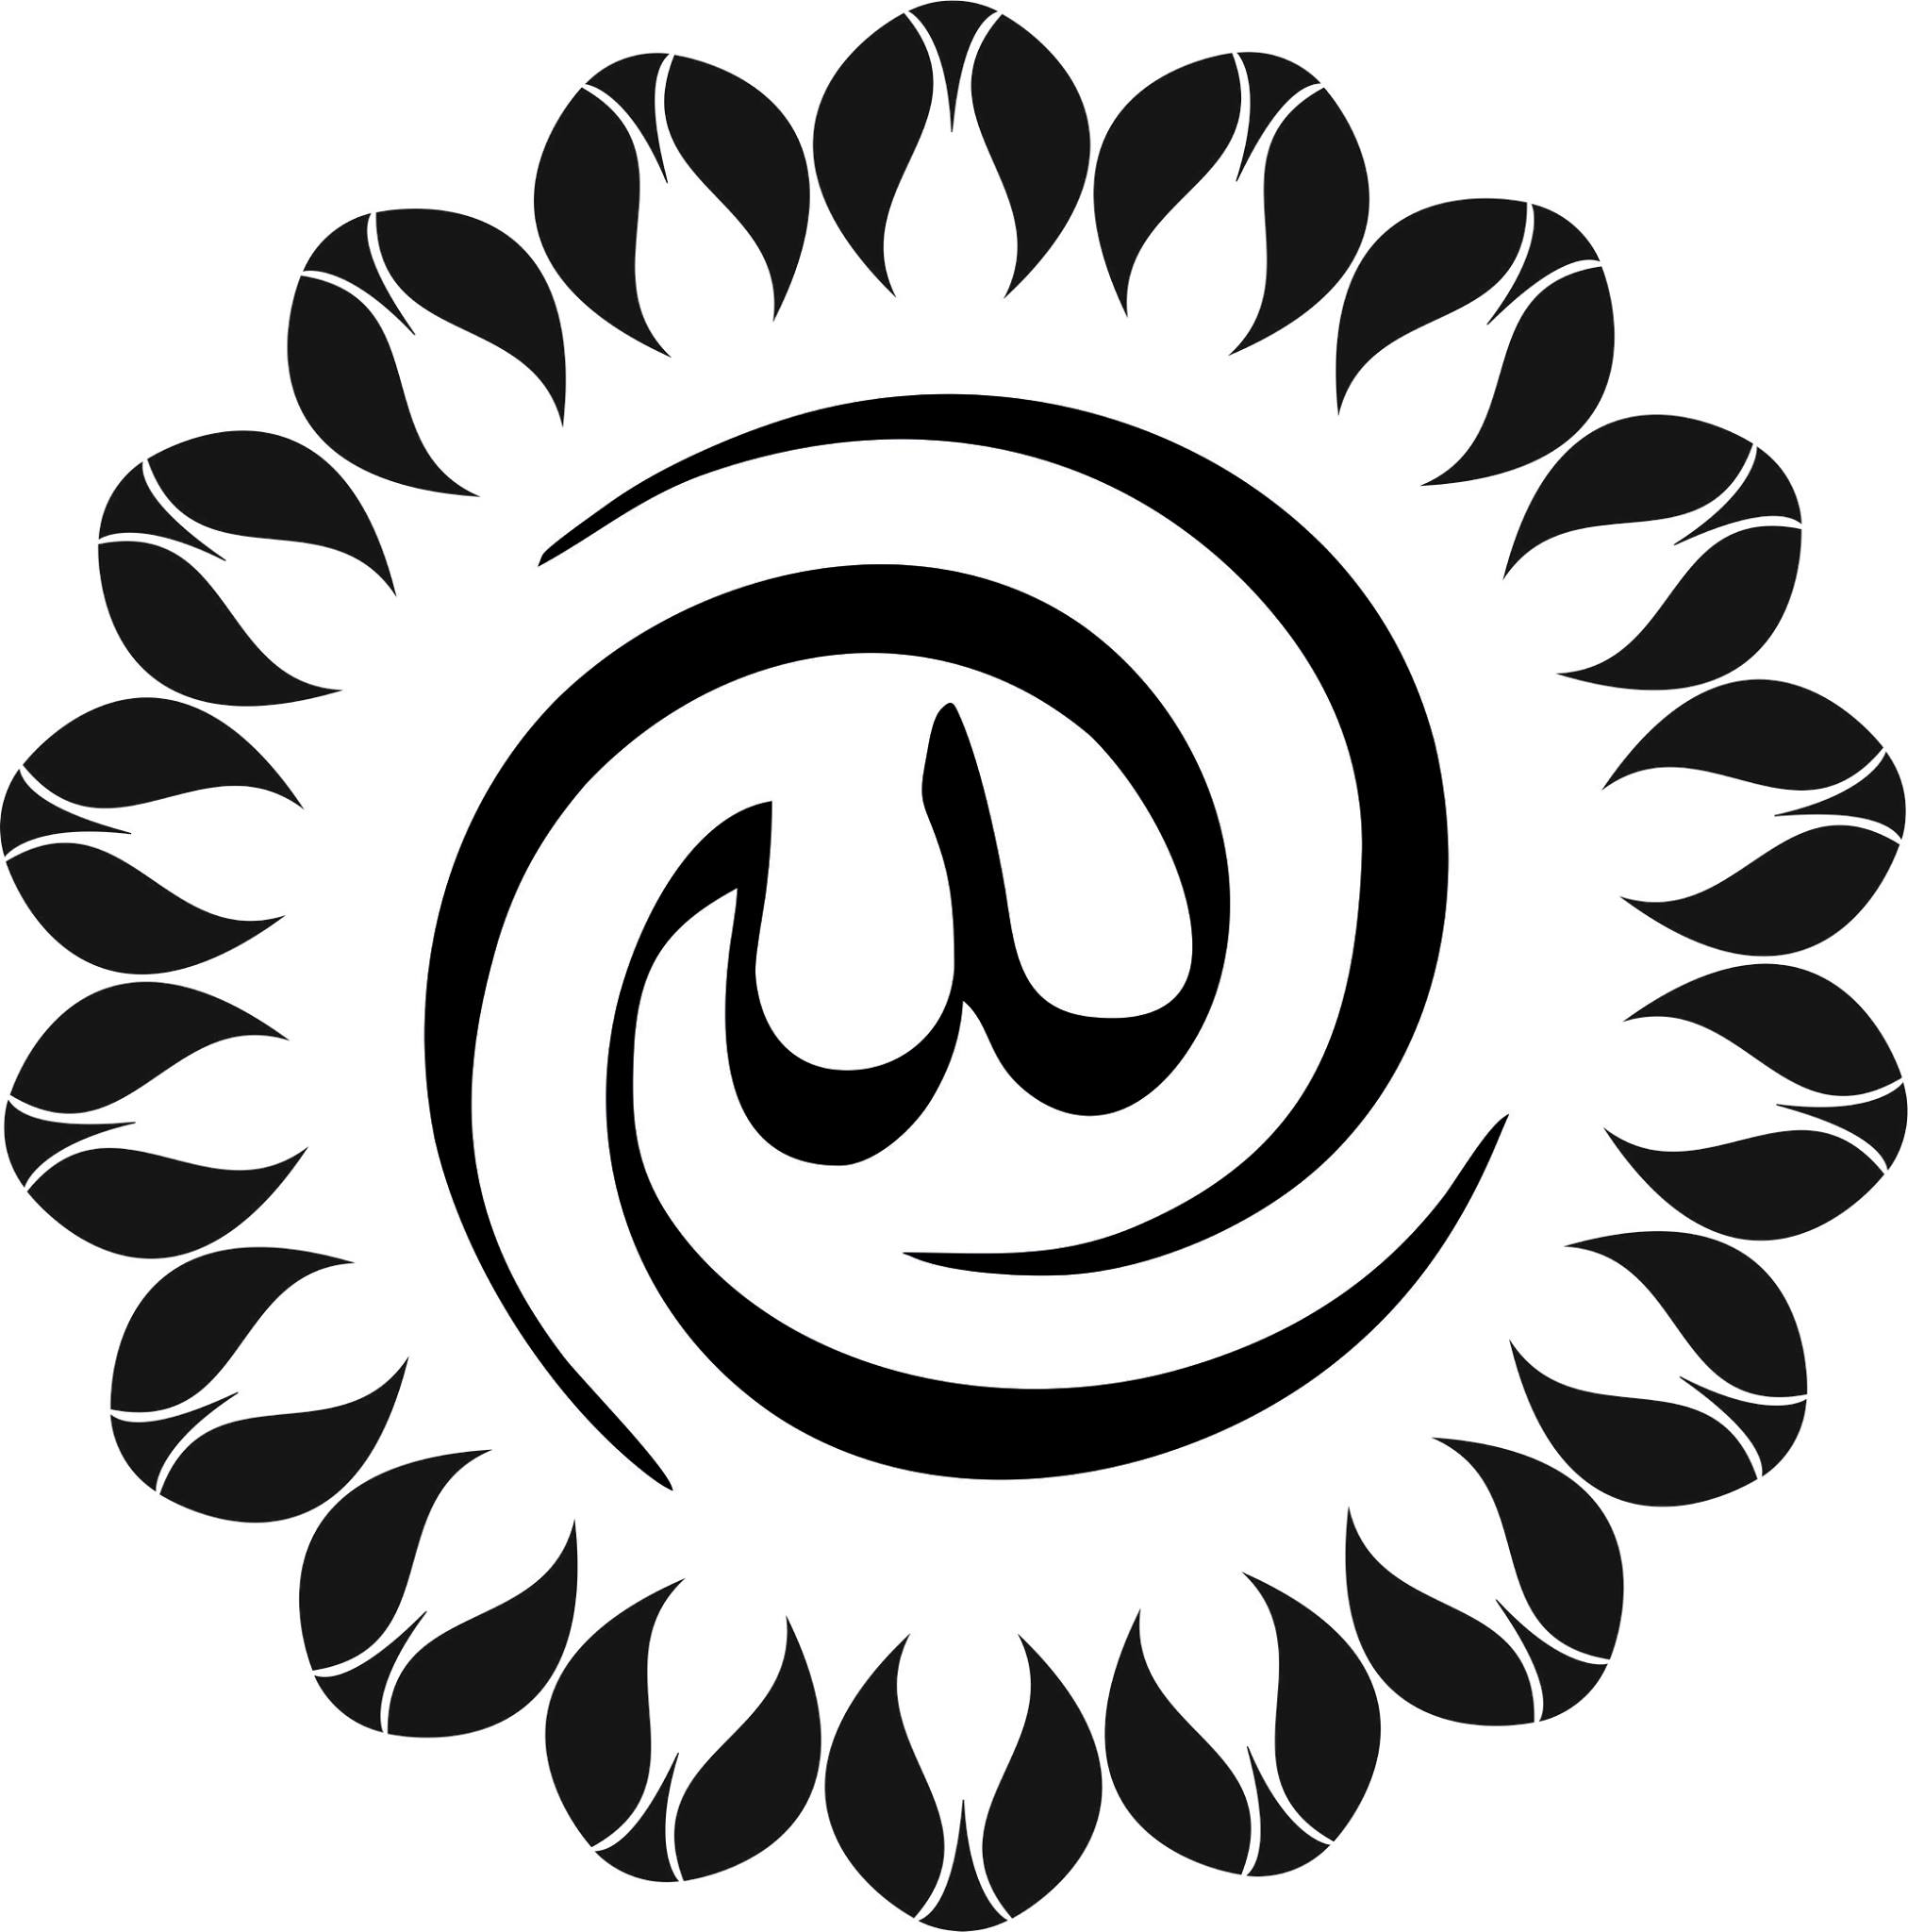 الله في الخط العربي فن المتجهات jpg Image